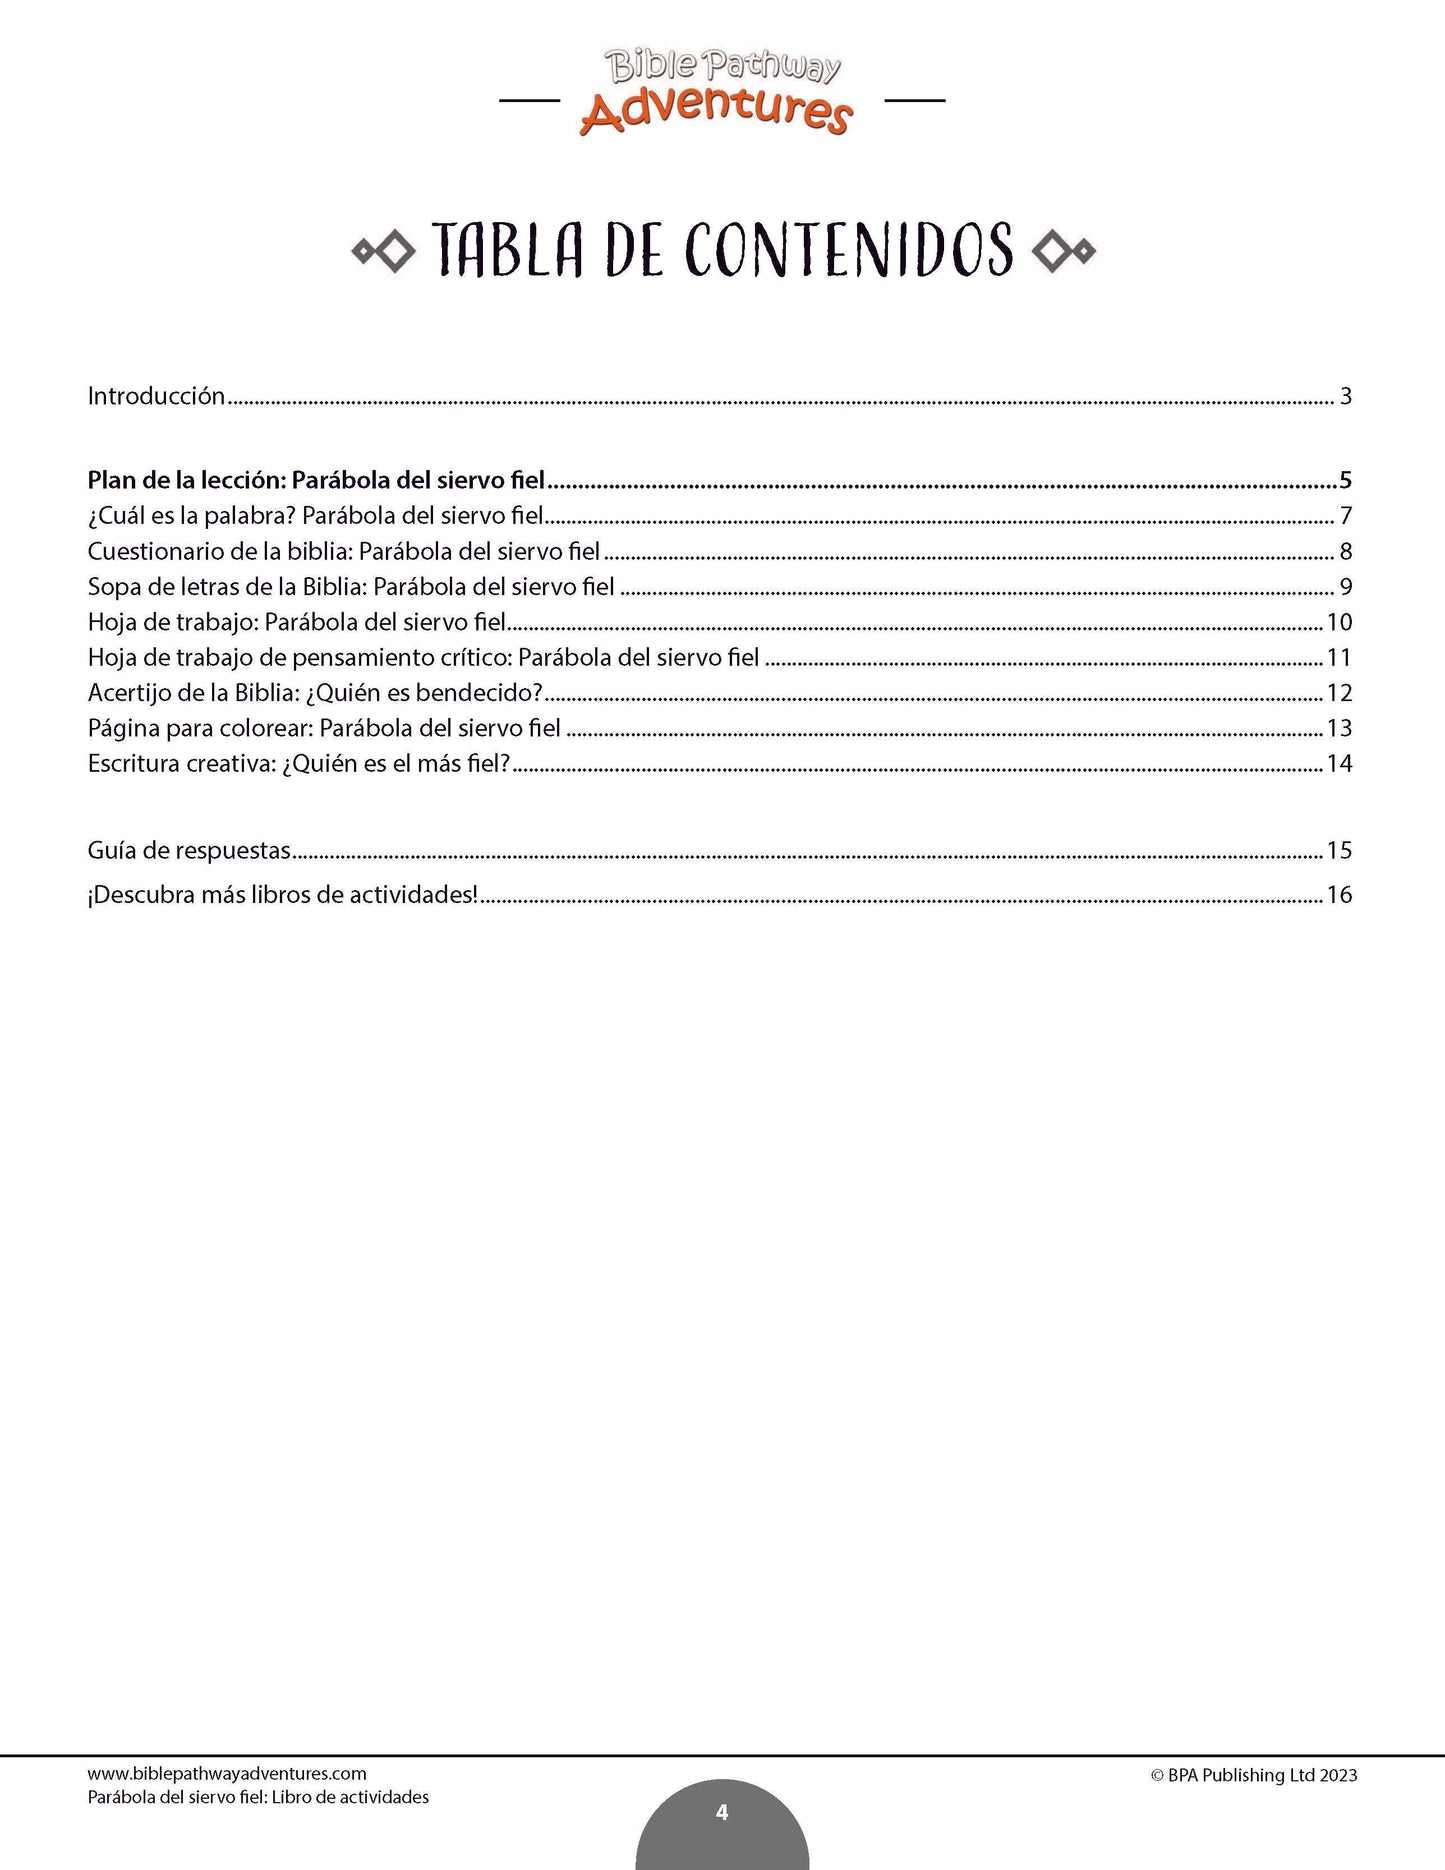 Parábola del siervo fiel: Libro de actividades (PDF)